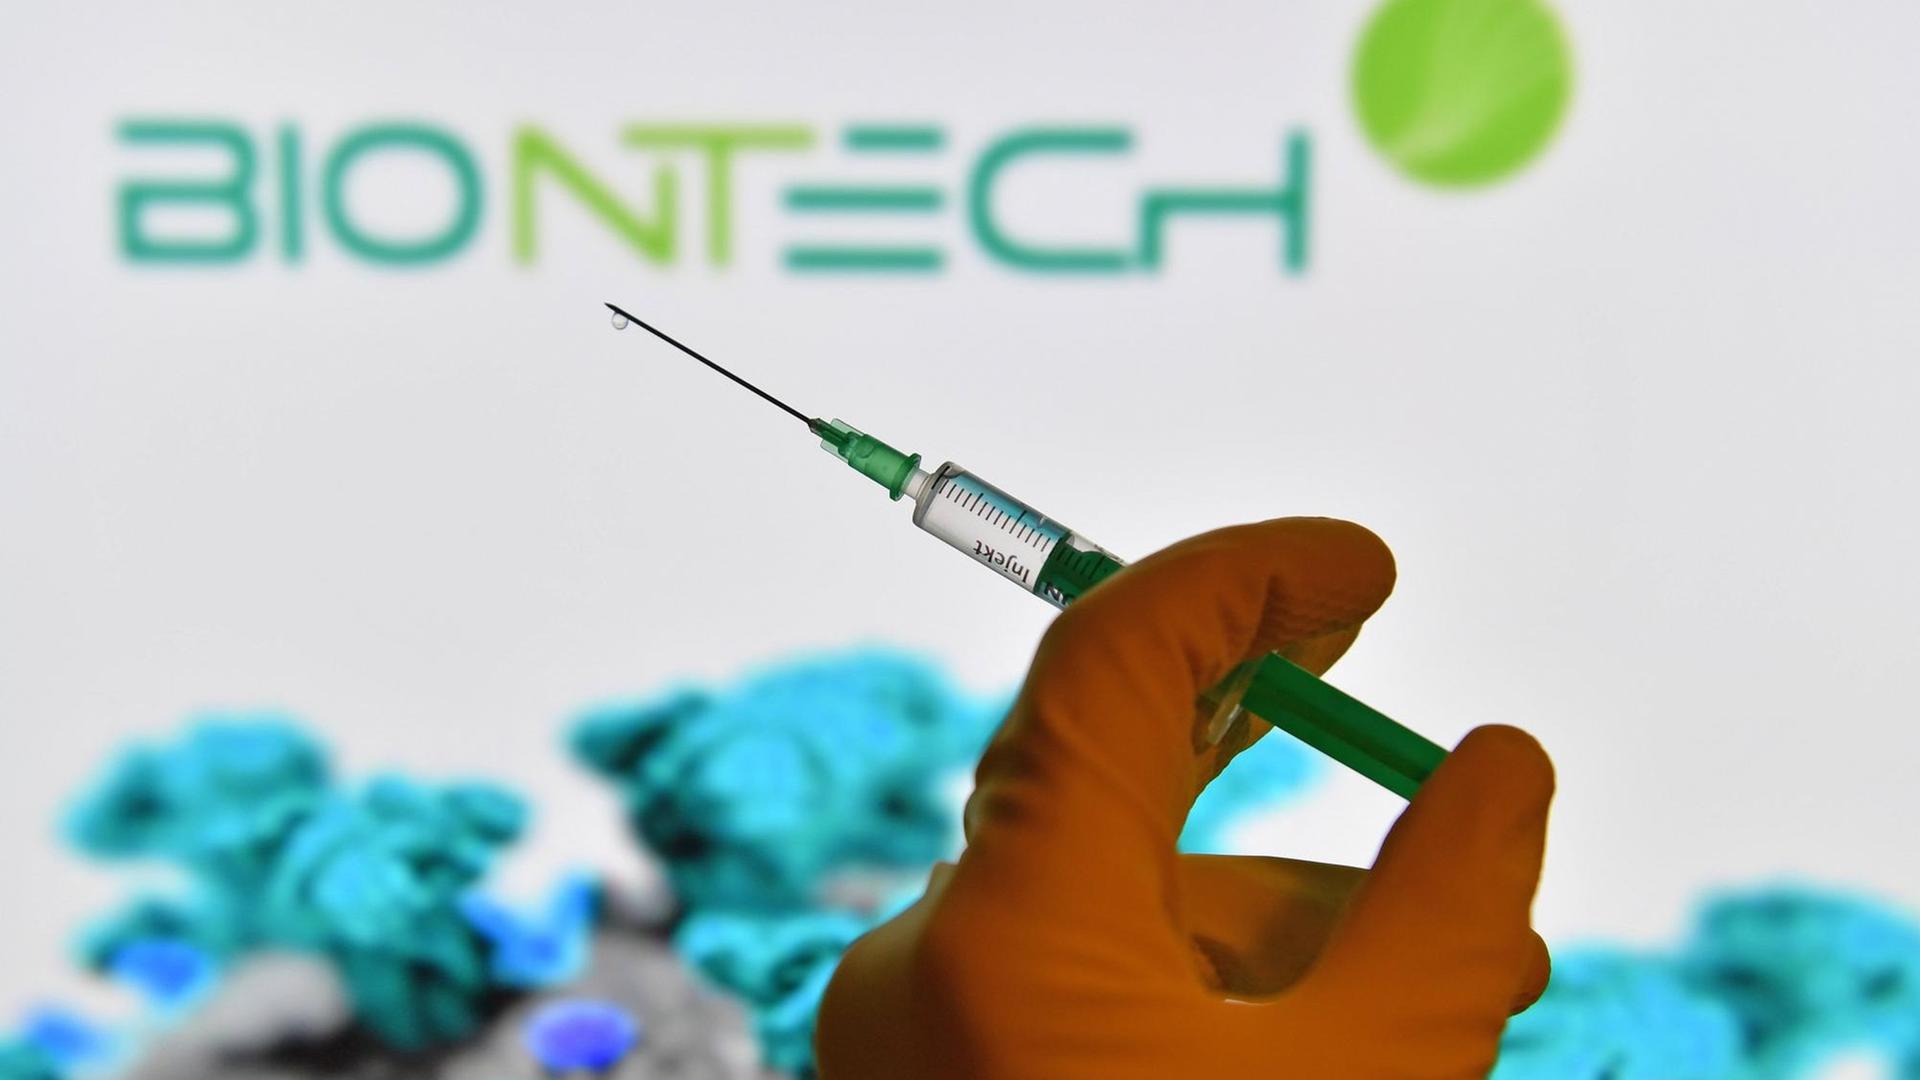 Symbolfoto: Eine Hand in Gummihandschuhen hält eine Einwegspritze mit Impfstoff zur Injektion mit einer Kanuele, im Hintergrund ist das Logo von "Biontech" zus sehen